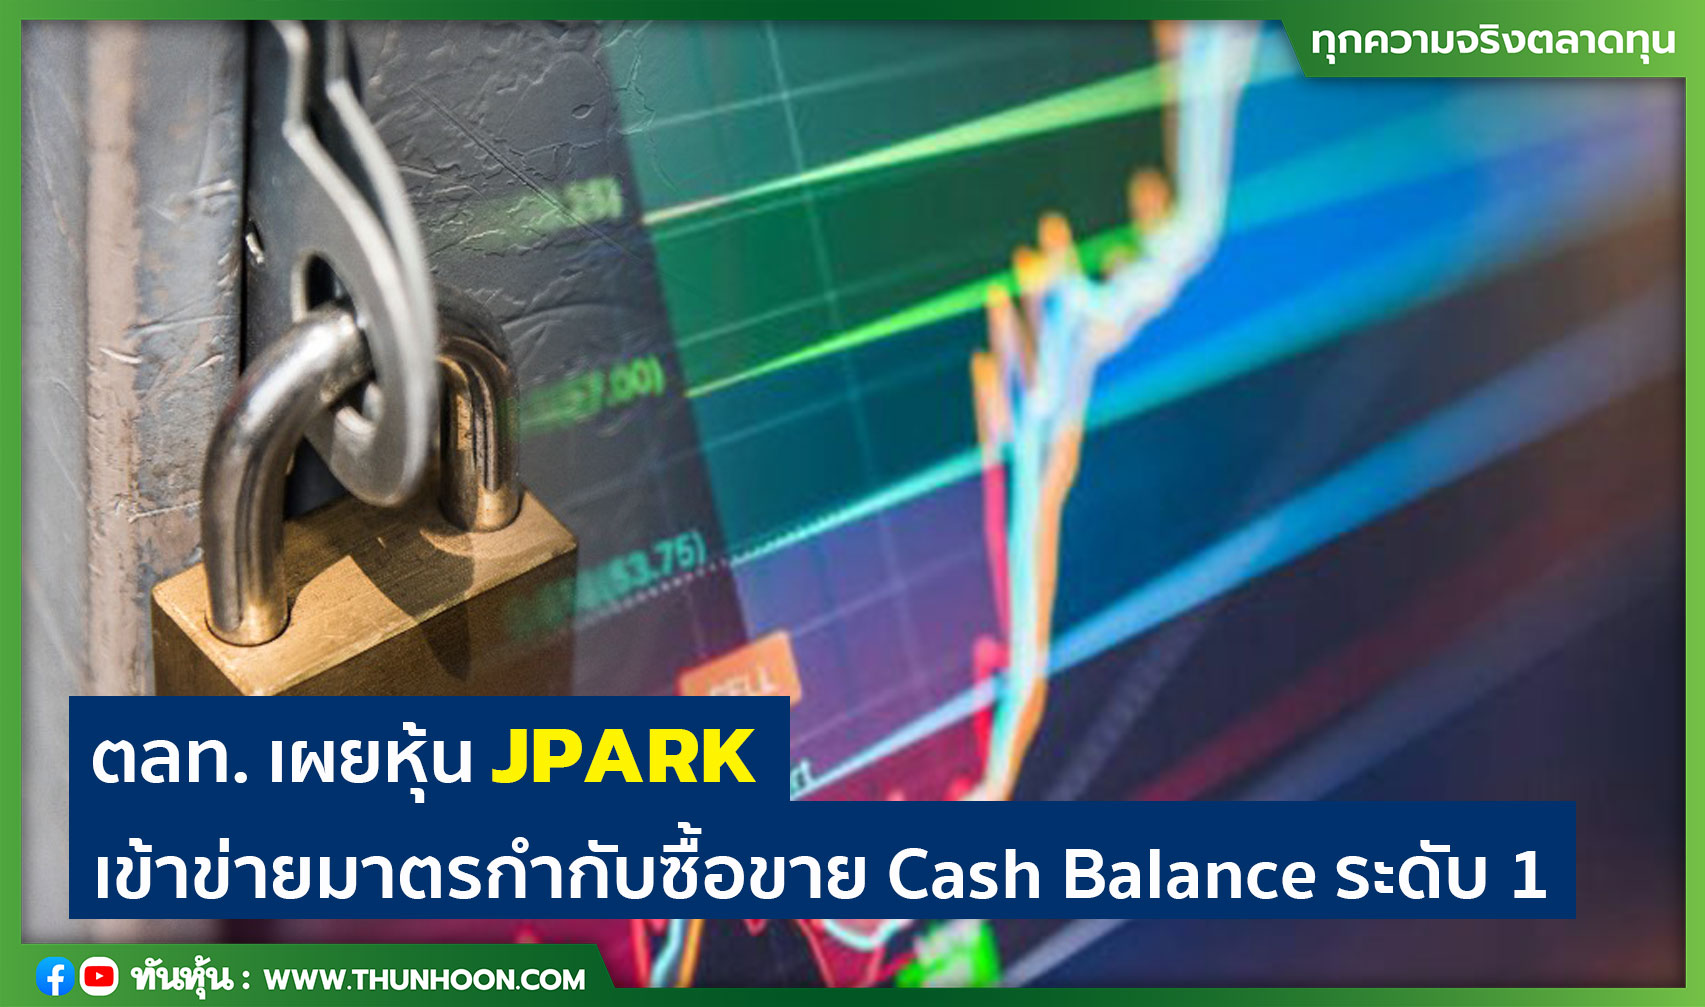 ตลท. เผยหุ้น JPARK เข้าข่ายมาตรกำกับซื้อขาย Cash Balance ระดับ 1